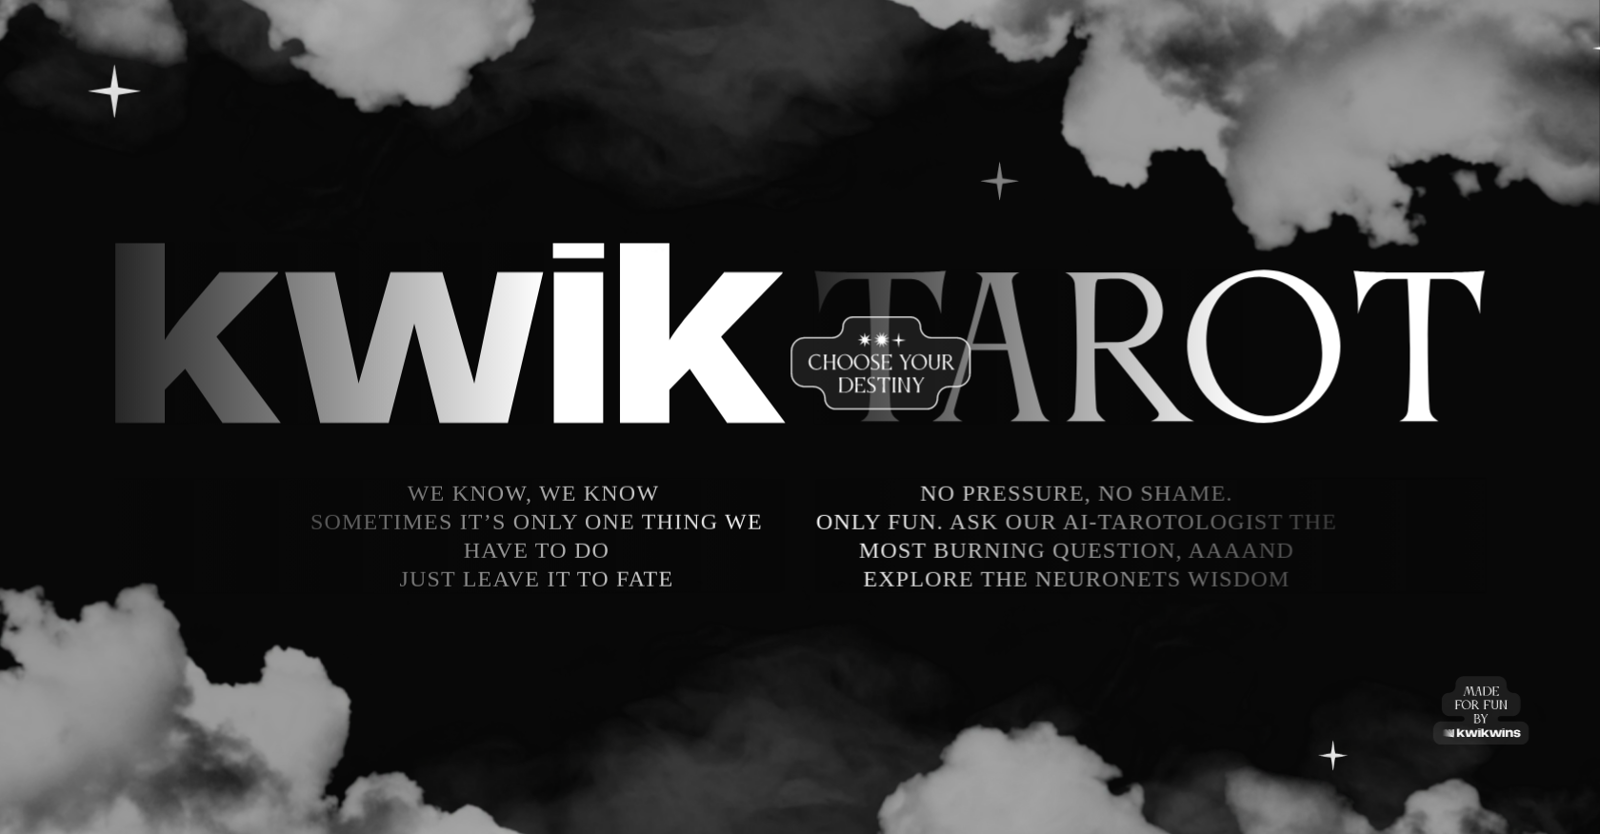 KwikTarot website